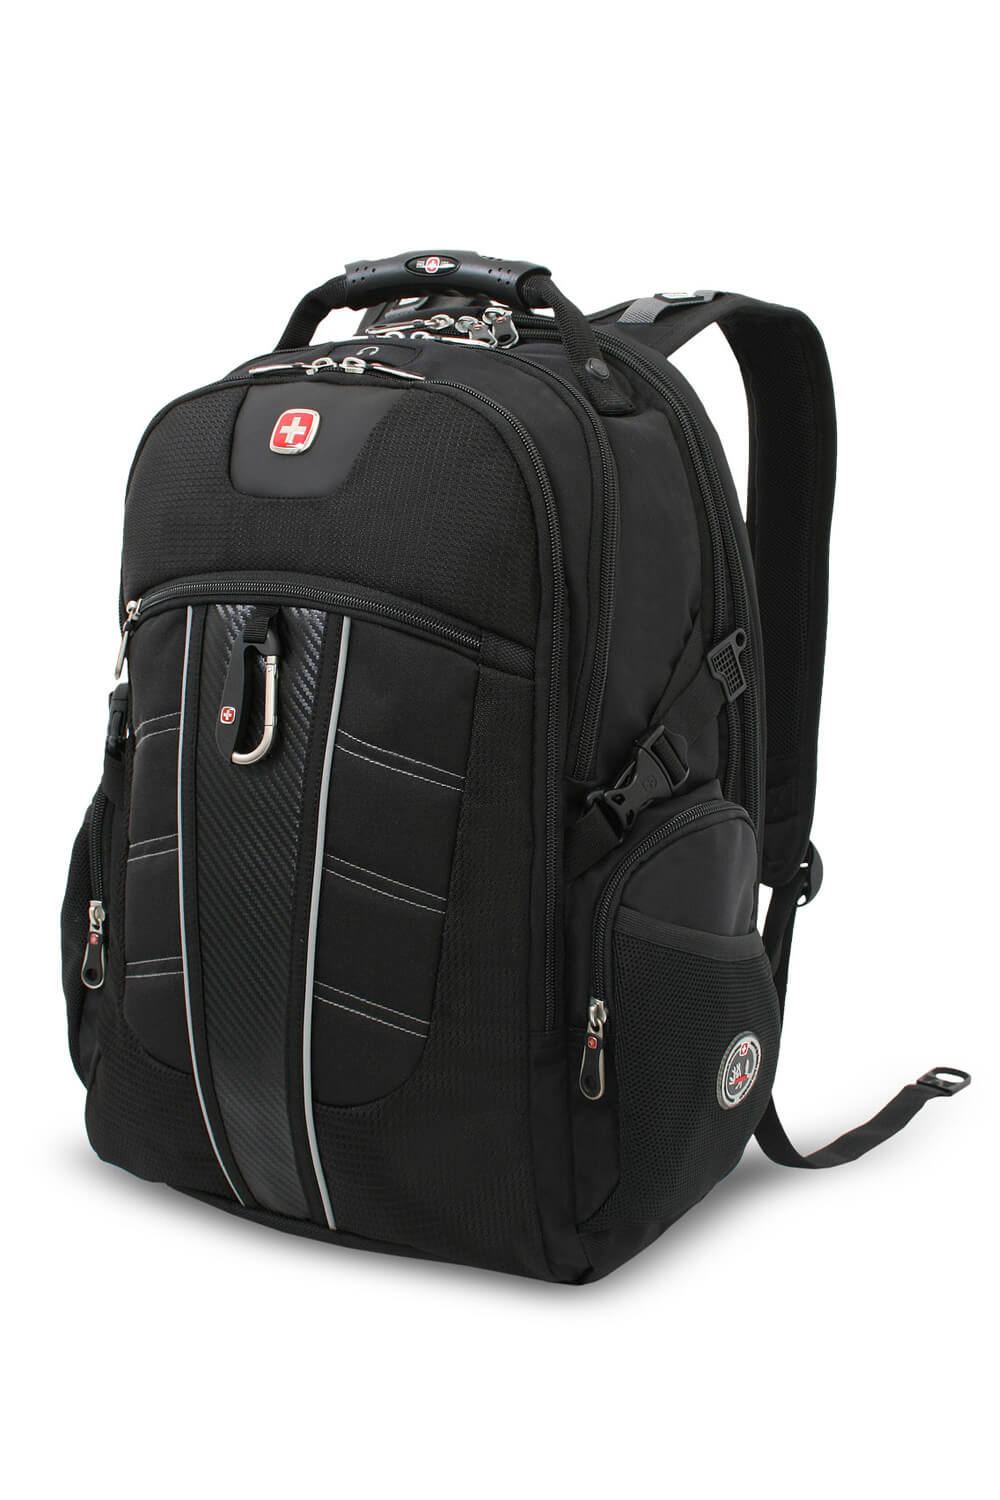 Swissgear 2769 ScanSmart Laptop Backpack - Black